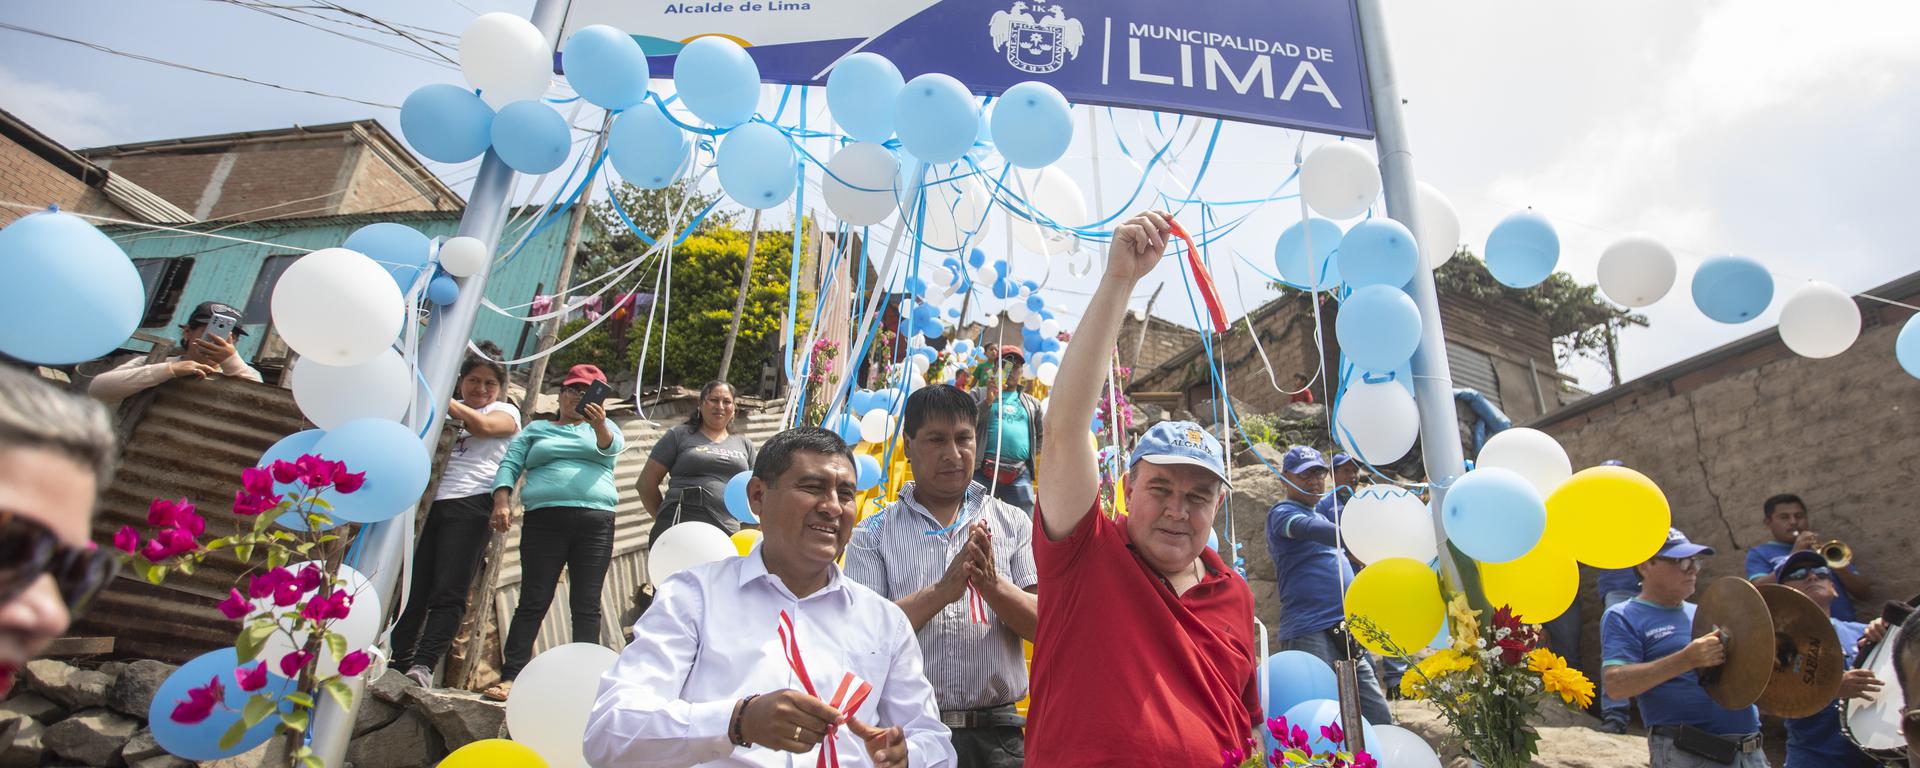 Municipalidad de Lima inaugura diez escaleras en Asentamiento Humano del Rímac: ¿es realmente una medida integral para el tránsito? | ANÁLISIS